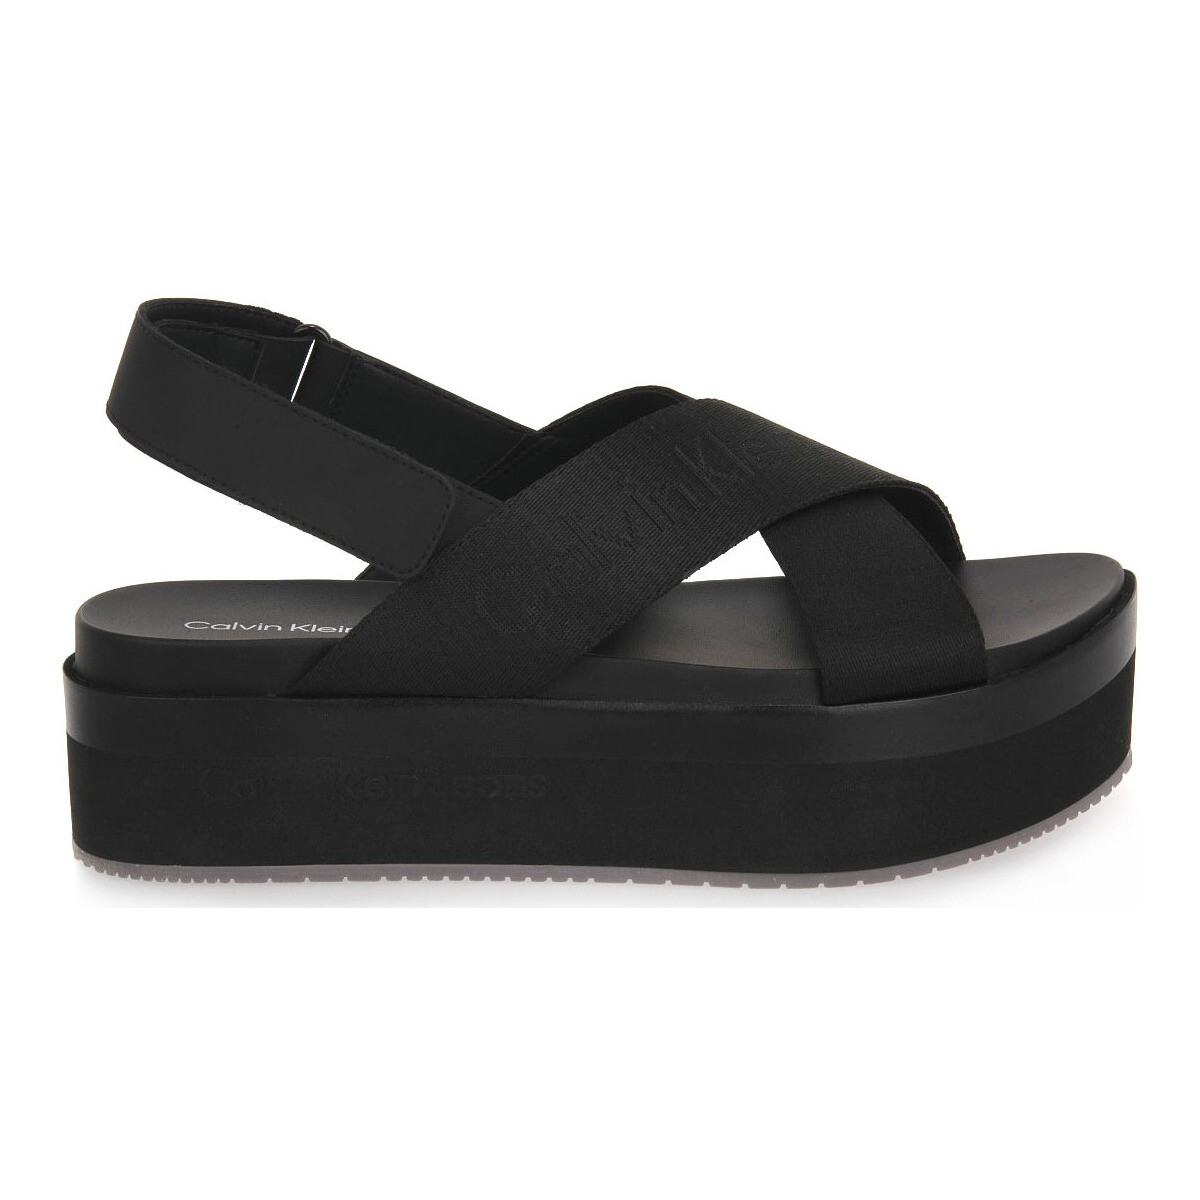 Schoenen Dames Sandalen / Open schoenen Calvin Klein Jeans 0GT FLATFORM SANDAL Zwart